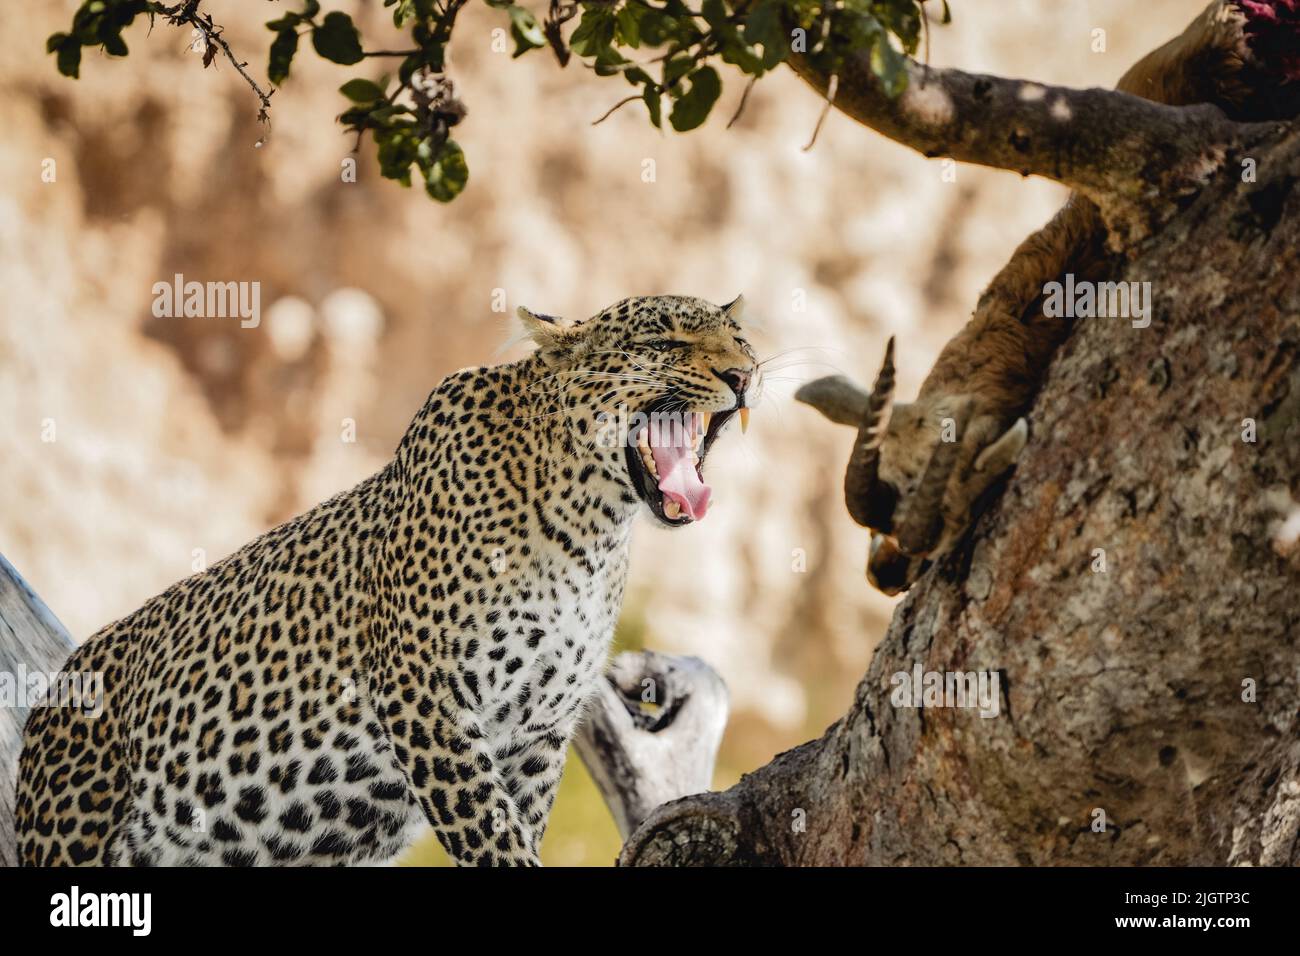 Un gros plan d'un léopard dangereux qui tourne sur l'arbre dans son habitat Banque D'Images